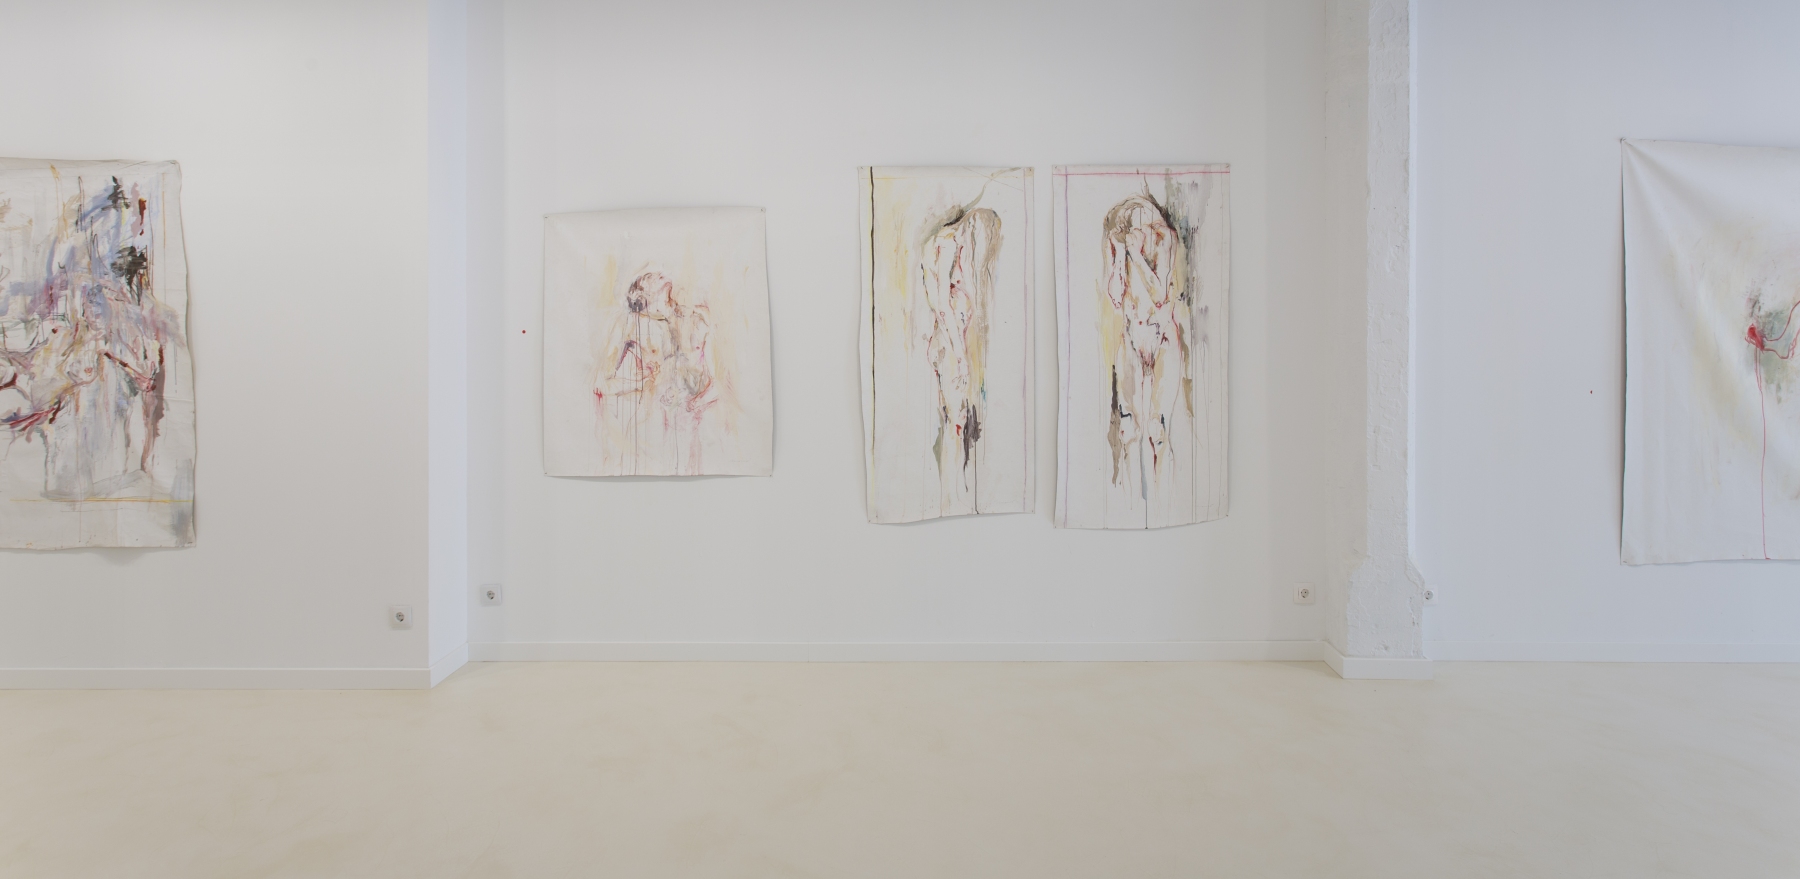 ana monso la poetica de la intimidad 8 Pigment Gallery Galería de Arte en Barcelona “La Poética de la Intimidad” de Ana Monsó